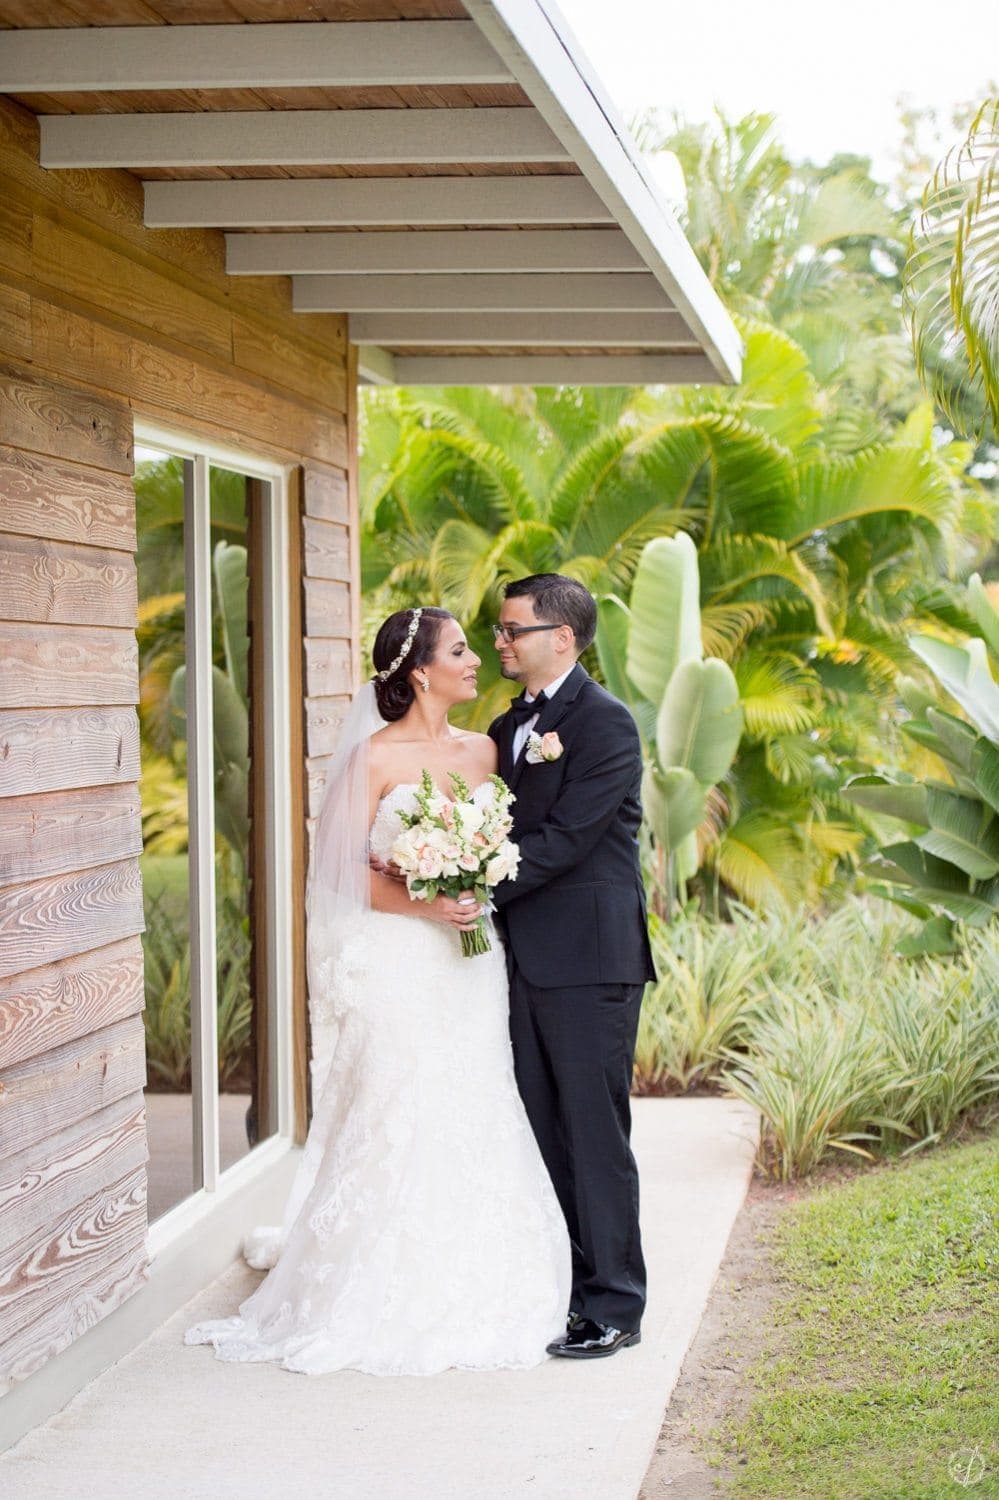 Recepcion de bodas en Zafra del Caribe Gurabo Puerto Rico por Camille Fontanez fotografo de bodas